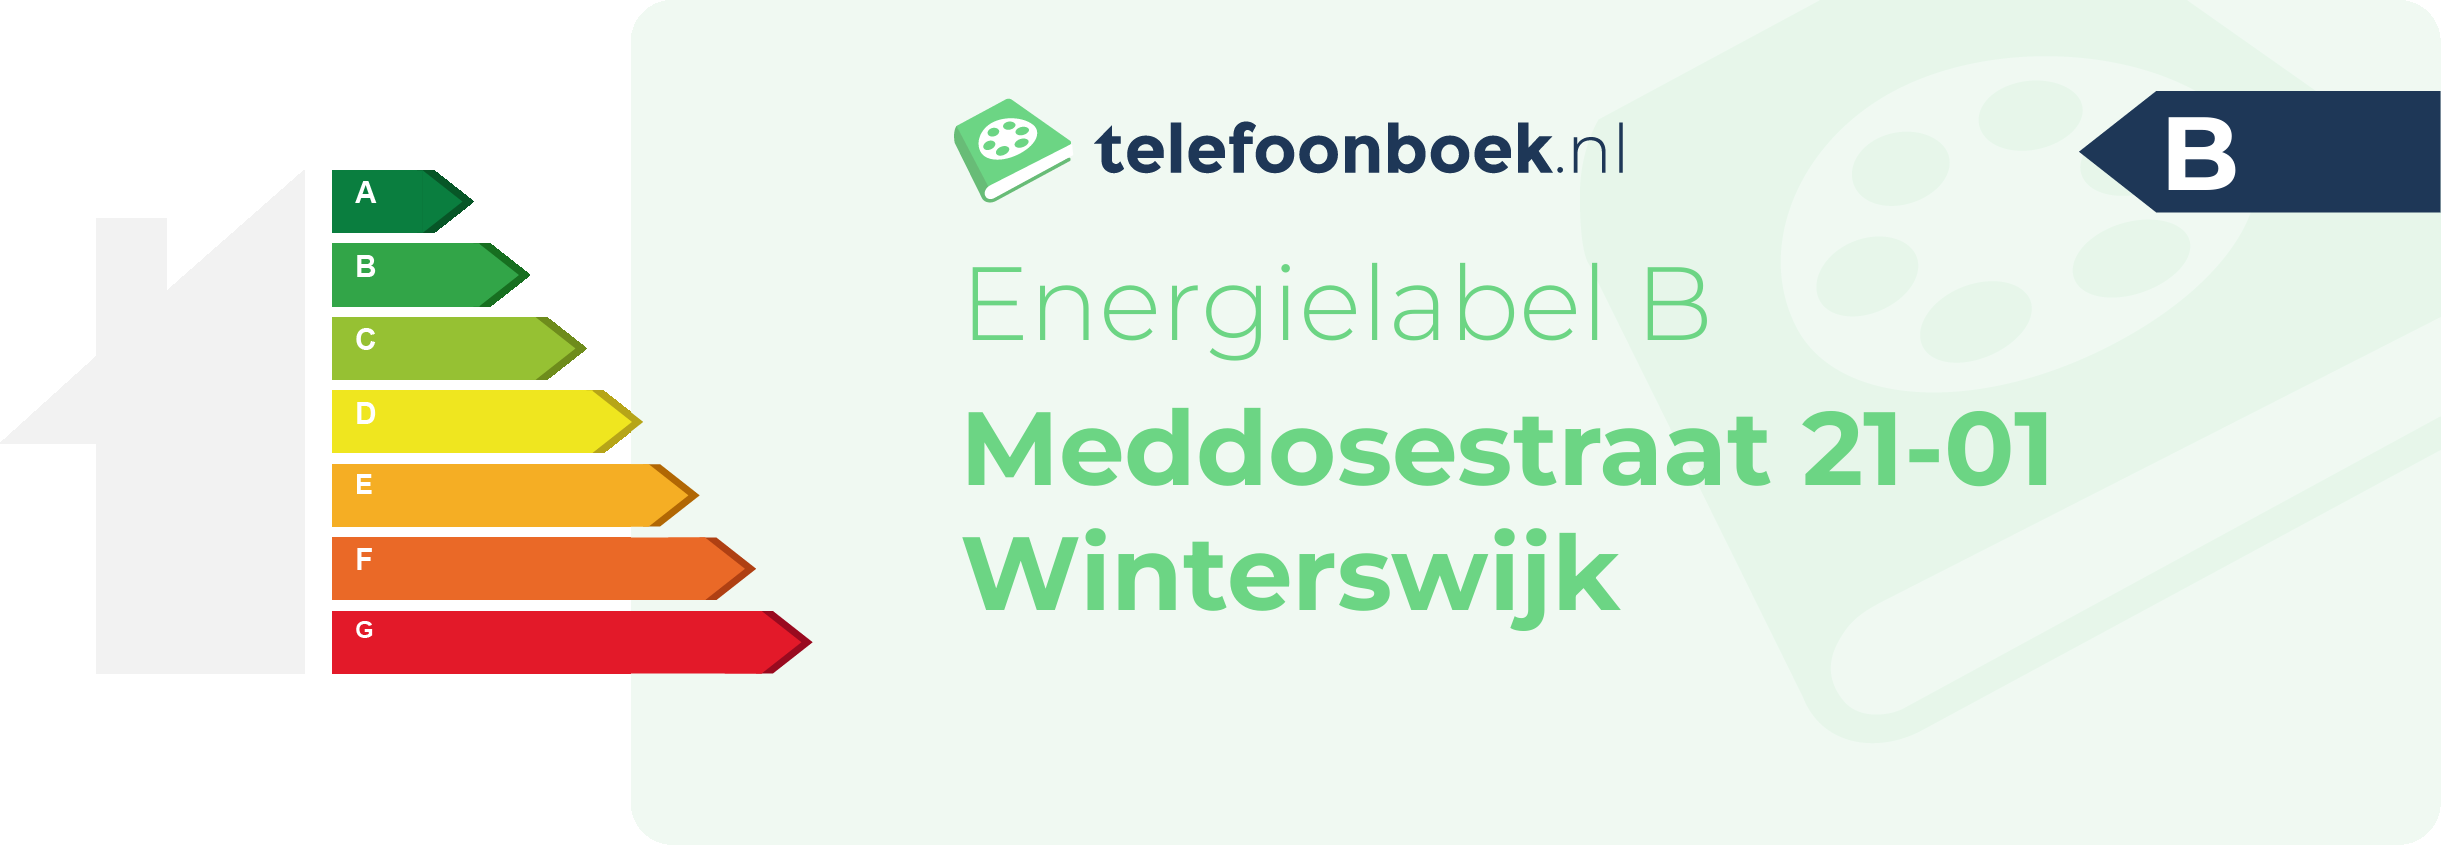 Energielabel Meddosestraat 21-01 Winterswijk